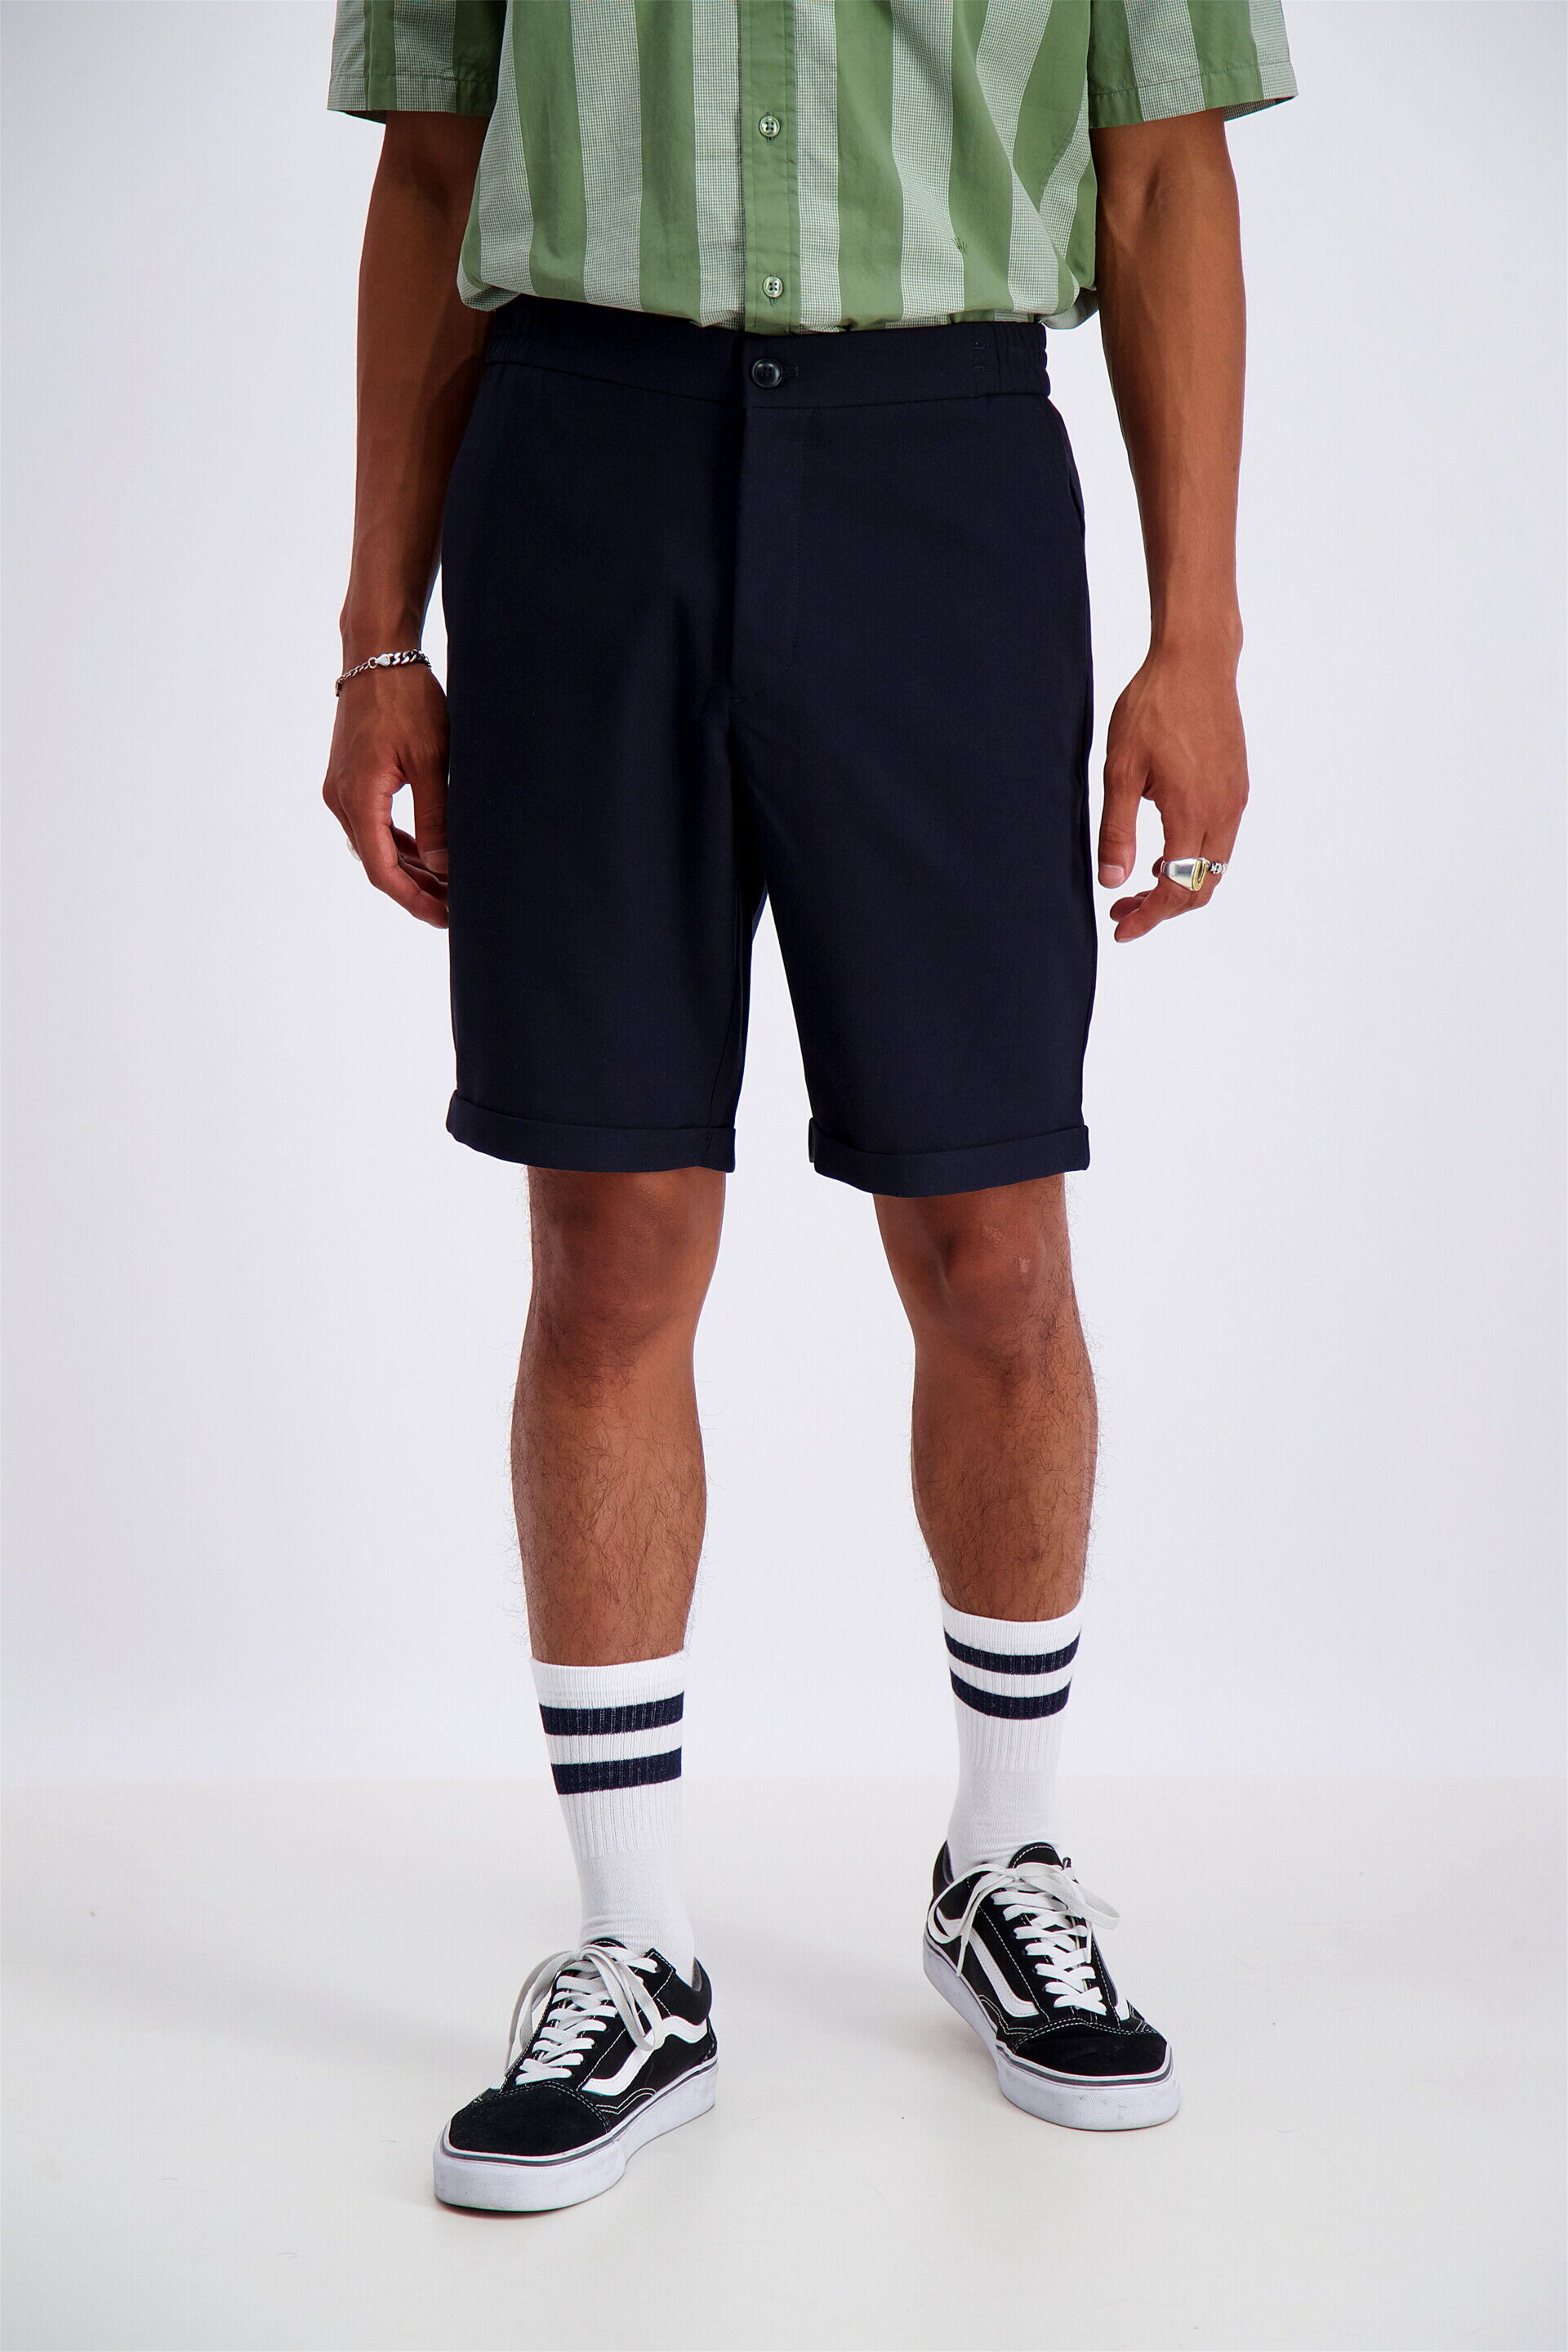 Junk de Luxe  Chino shorts 60-552001